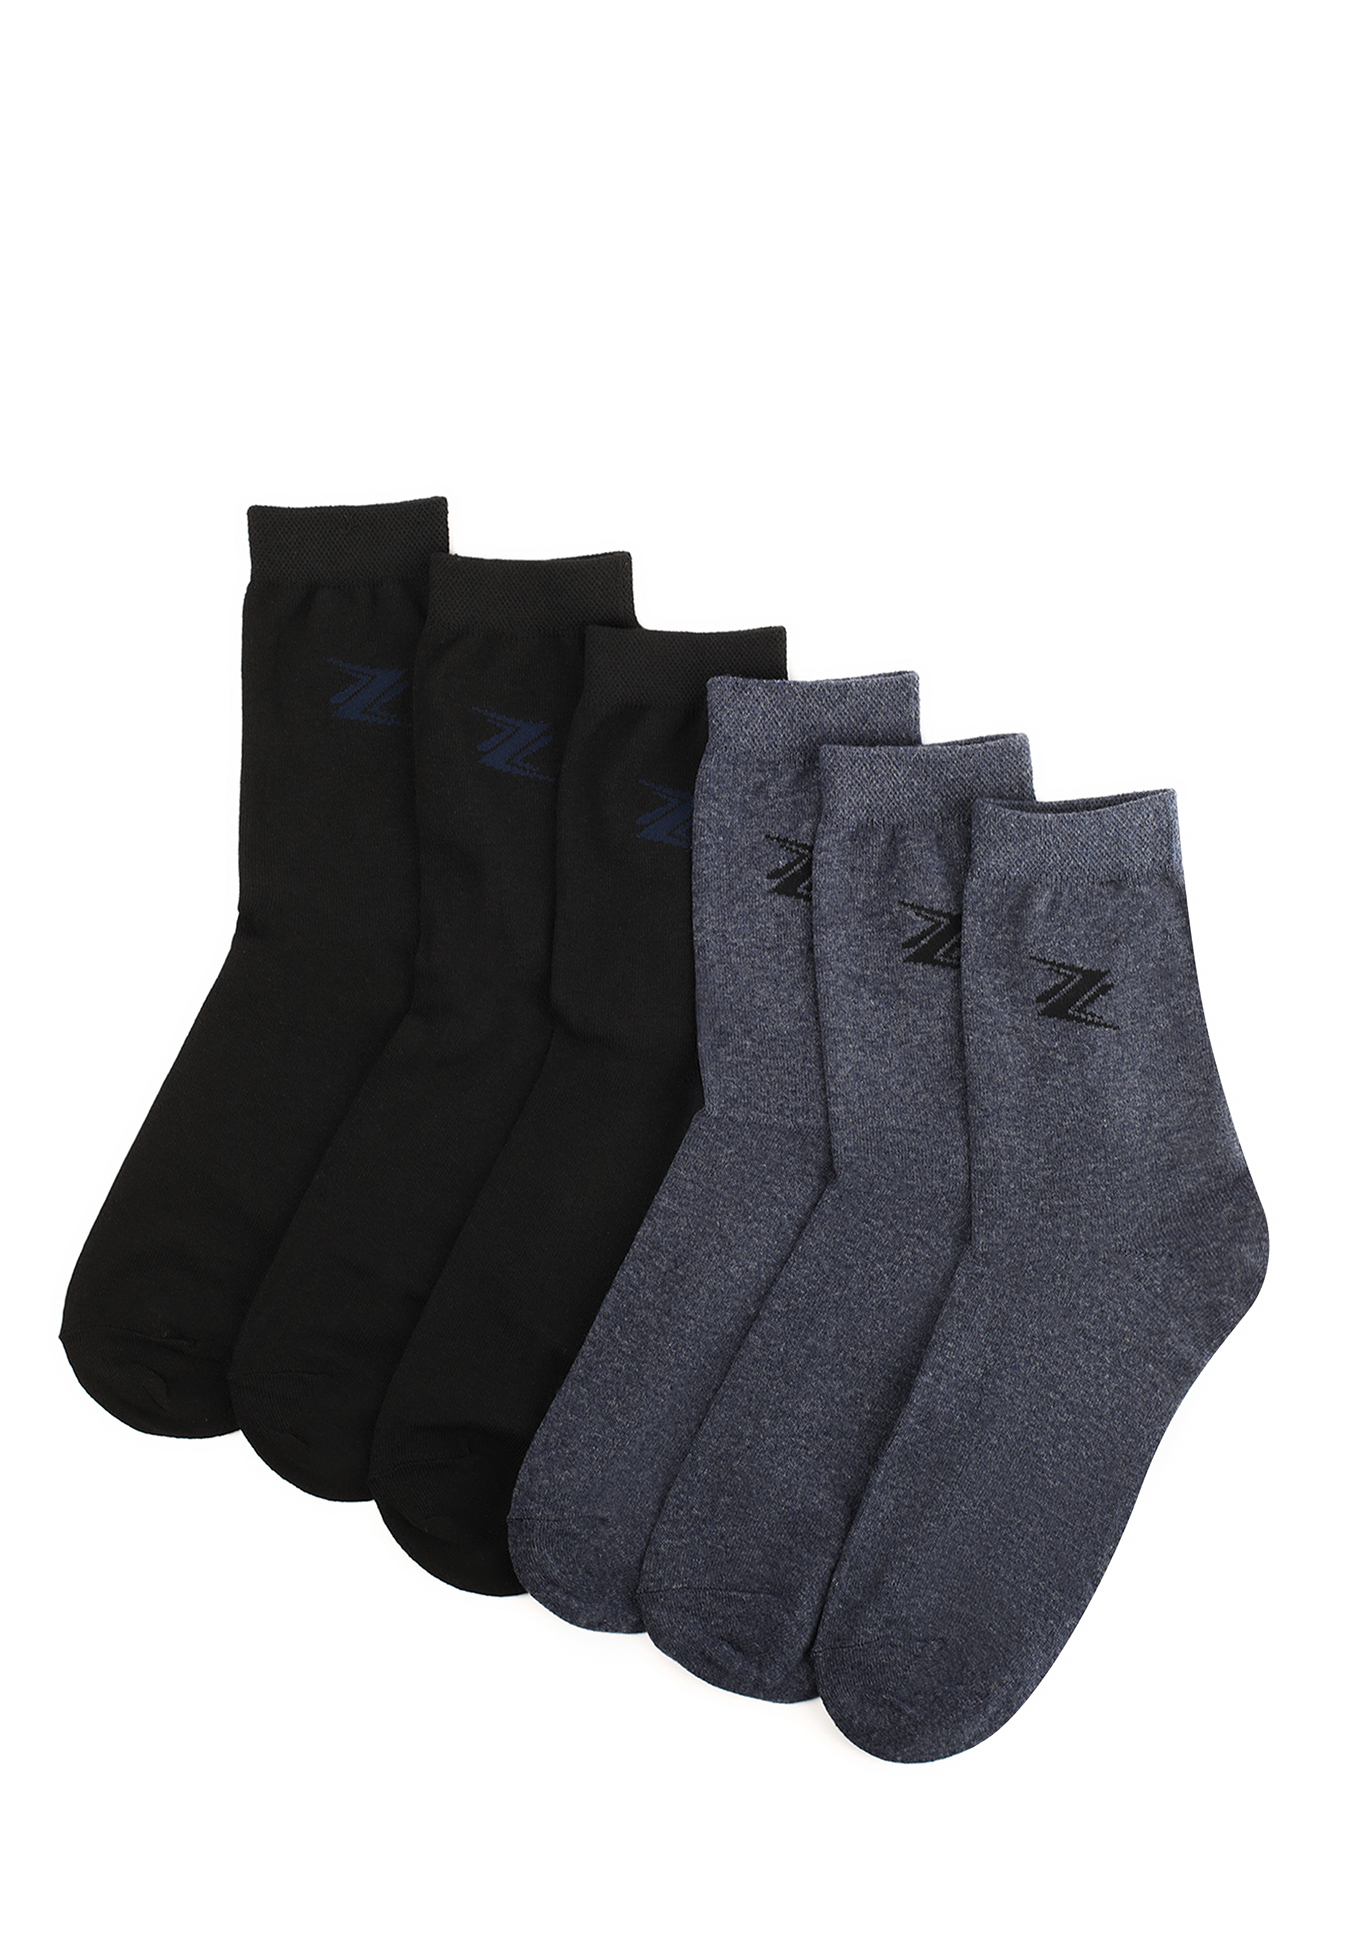 Комплект мужских носков с рисунком, 6 пар